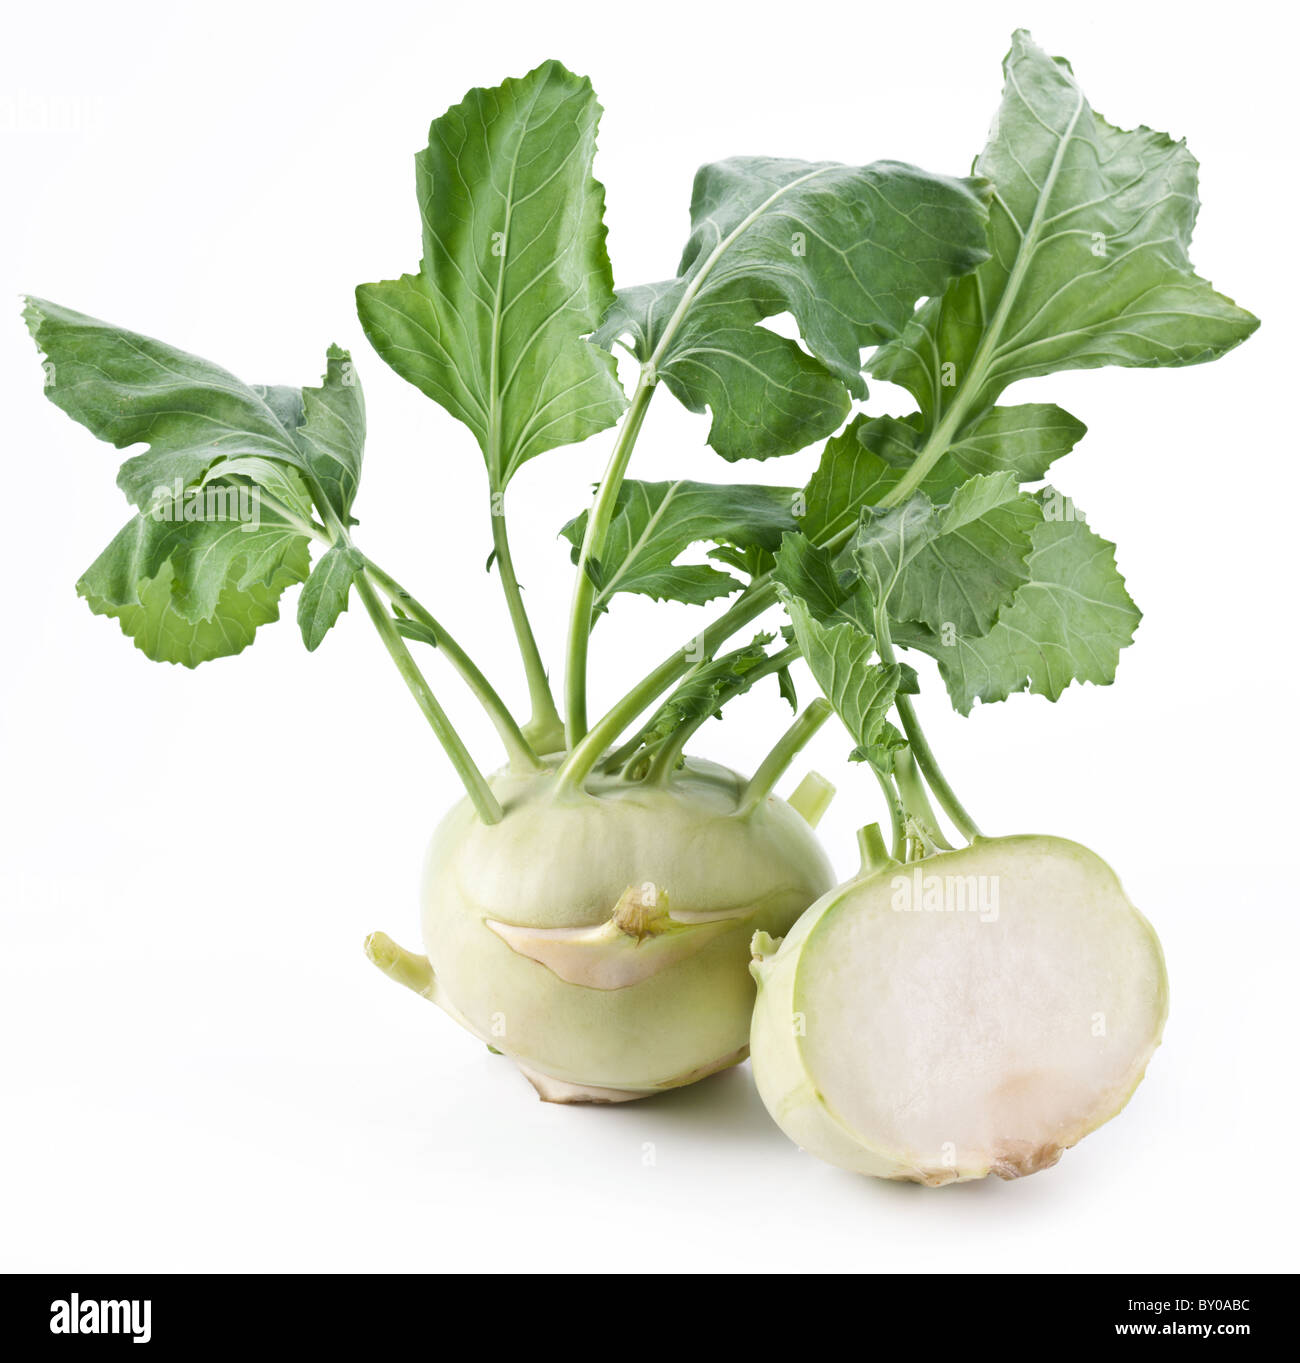 Cabbage kohlrabi on a white background Stock Photo